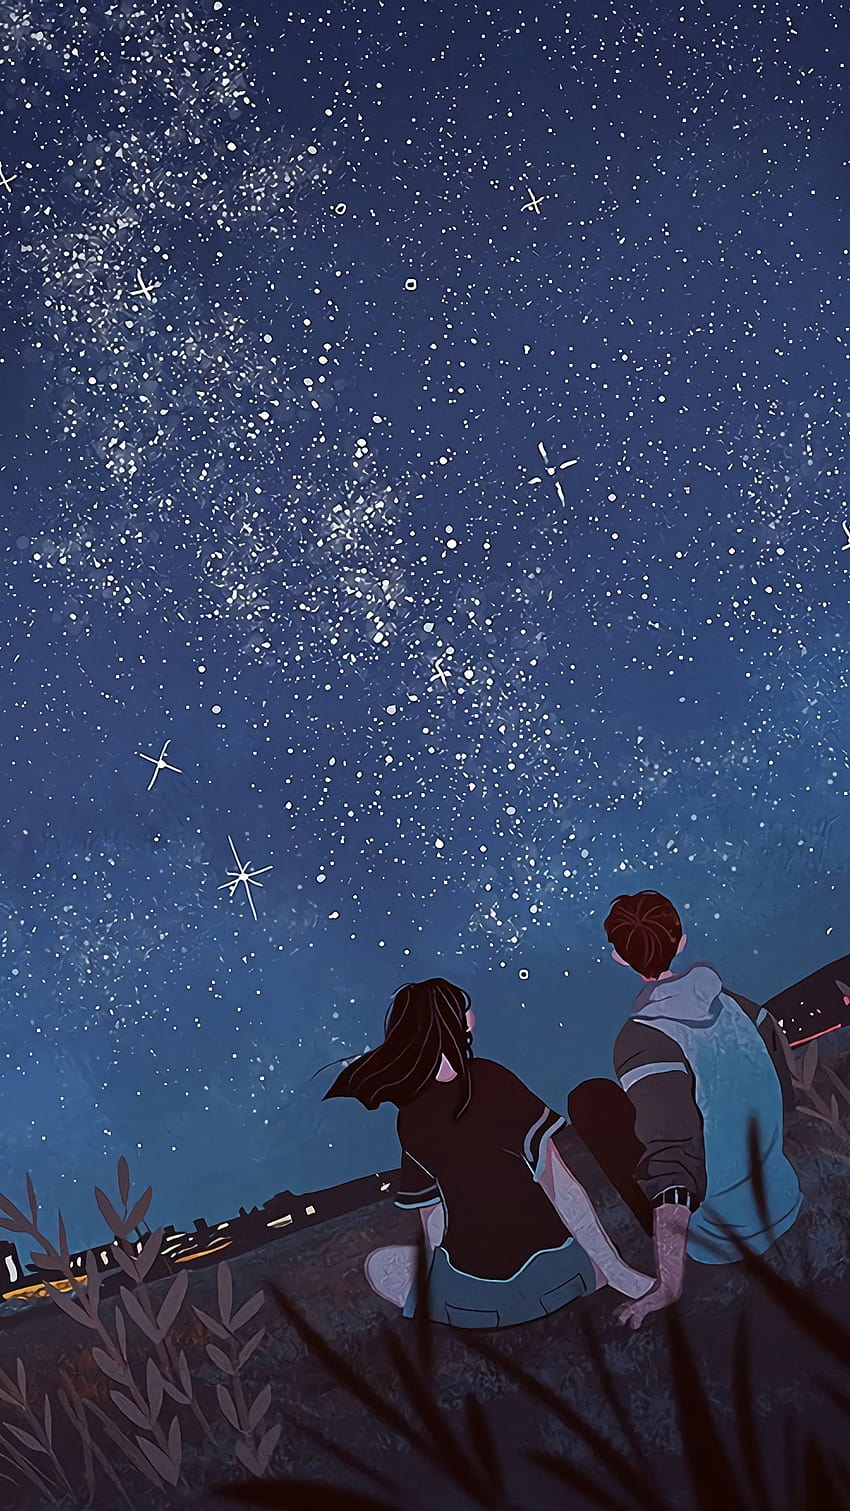 Bintang bersinar di langit, perempuan dan laki-laki duduk di padang rumput, perempuan dan laki-laki anime duduk bersama wallpaper ponsel HD